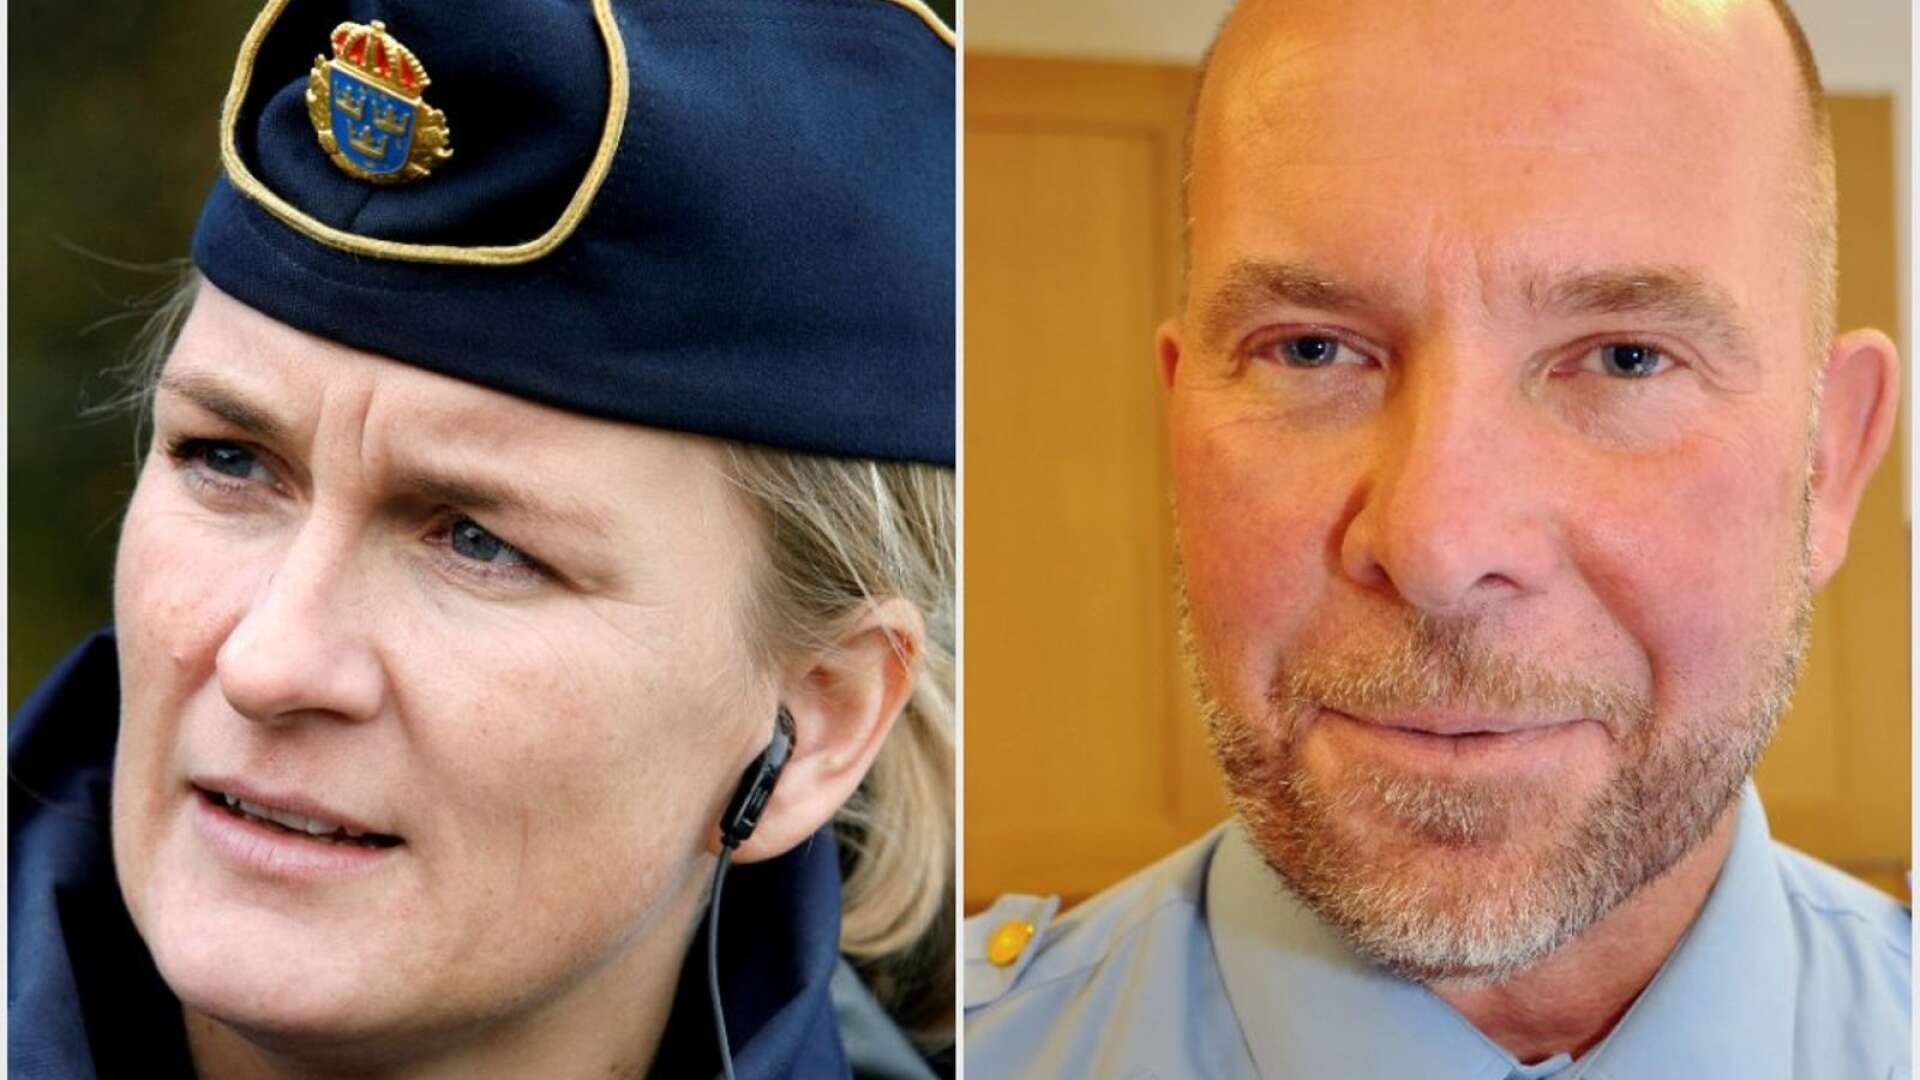 Jenny Wester blir ny lokalpolisområdeschef i Östra Fyrbodal. Hon ersätter Rickard Fremark som i stället blir ny lokalpolisområdeschef i Västra Fyrbodal.